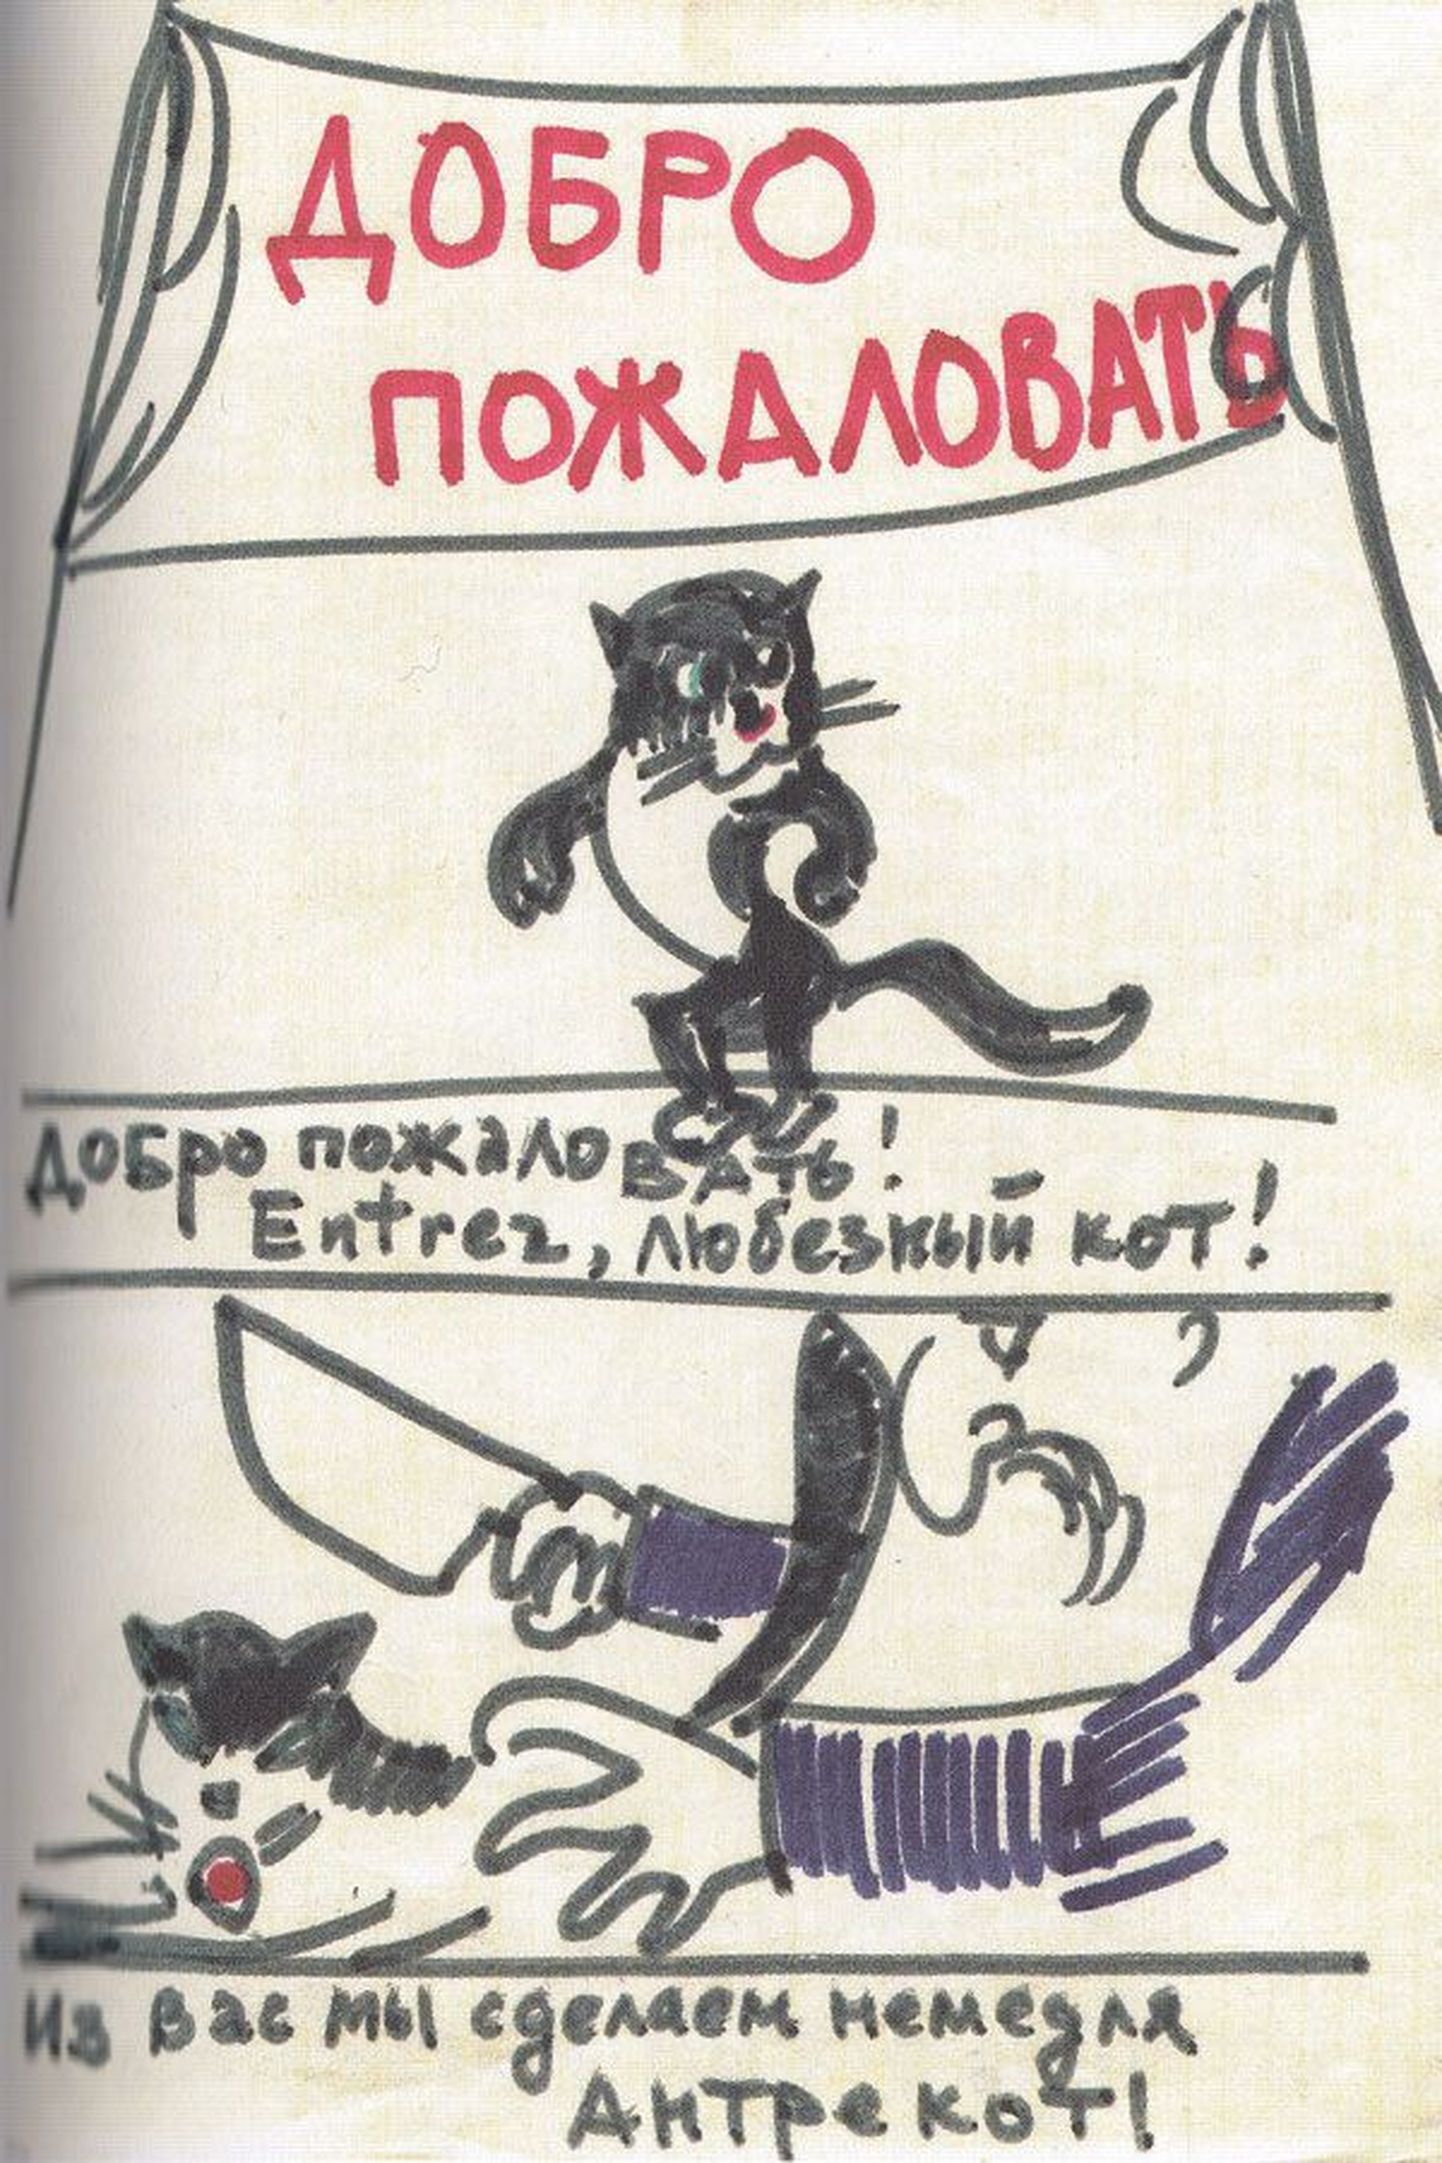 «Добро пожаловать! Entrez, любезный кот! Из вас мы сделаем немедля антрекот!» Рисунок для шуточного альбома «Котовасия». 1976 год.